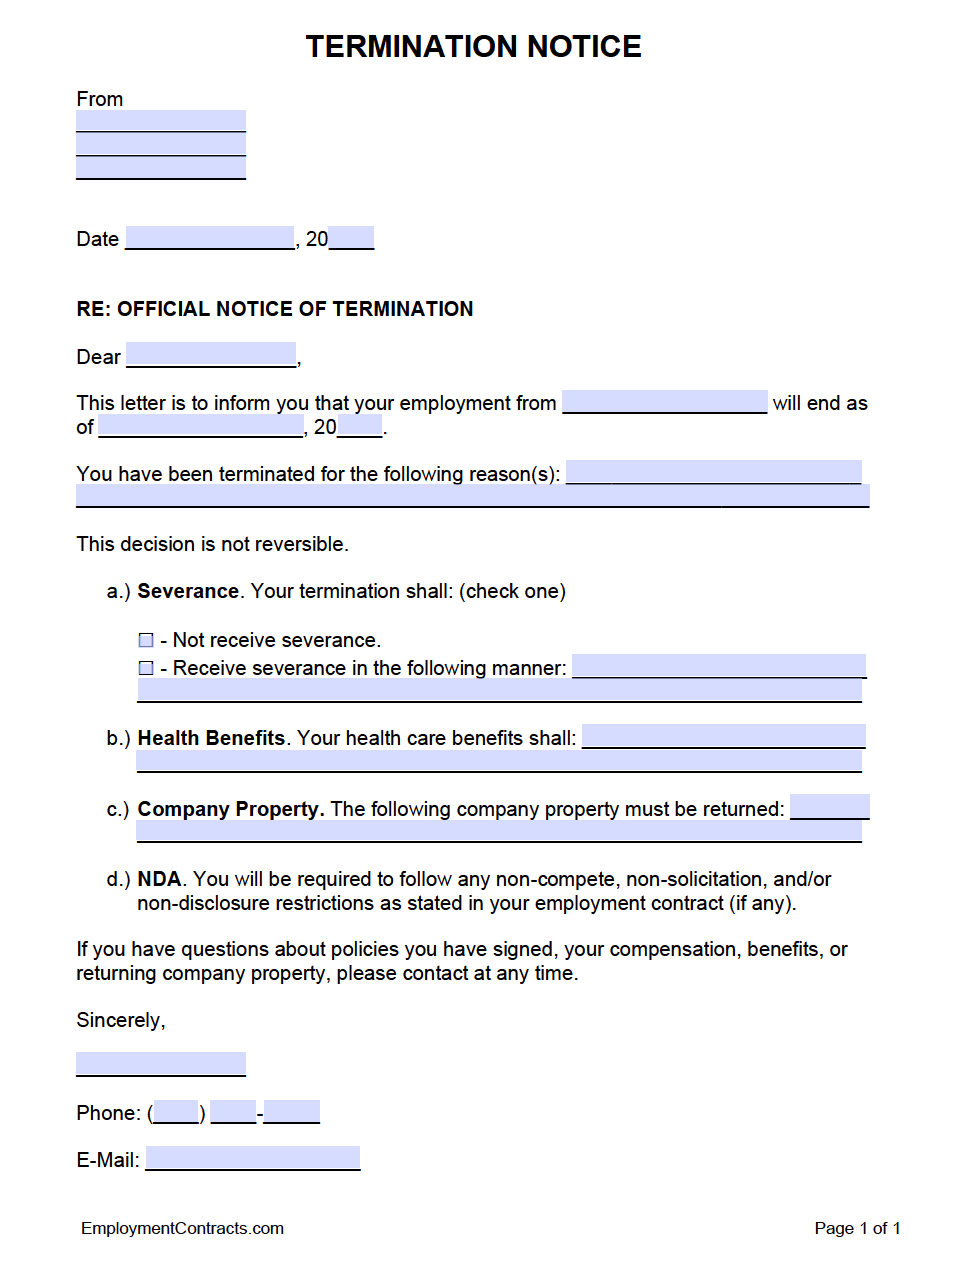 printable-employee-termination-form-pdf-printable-word-searches